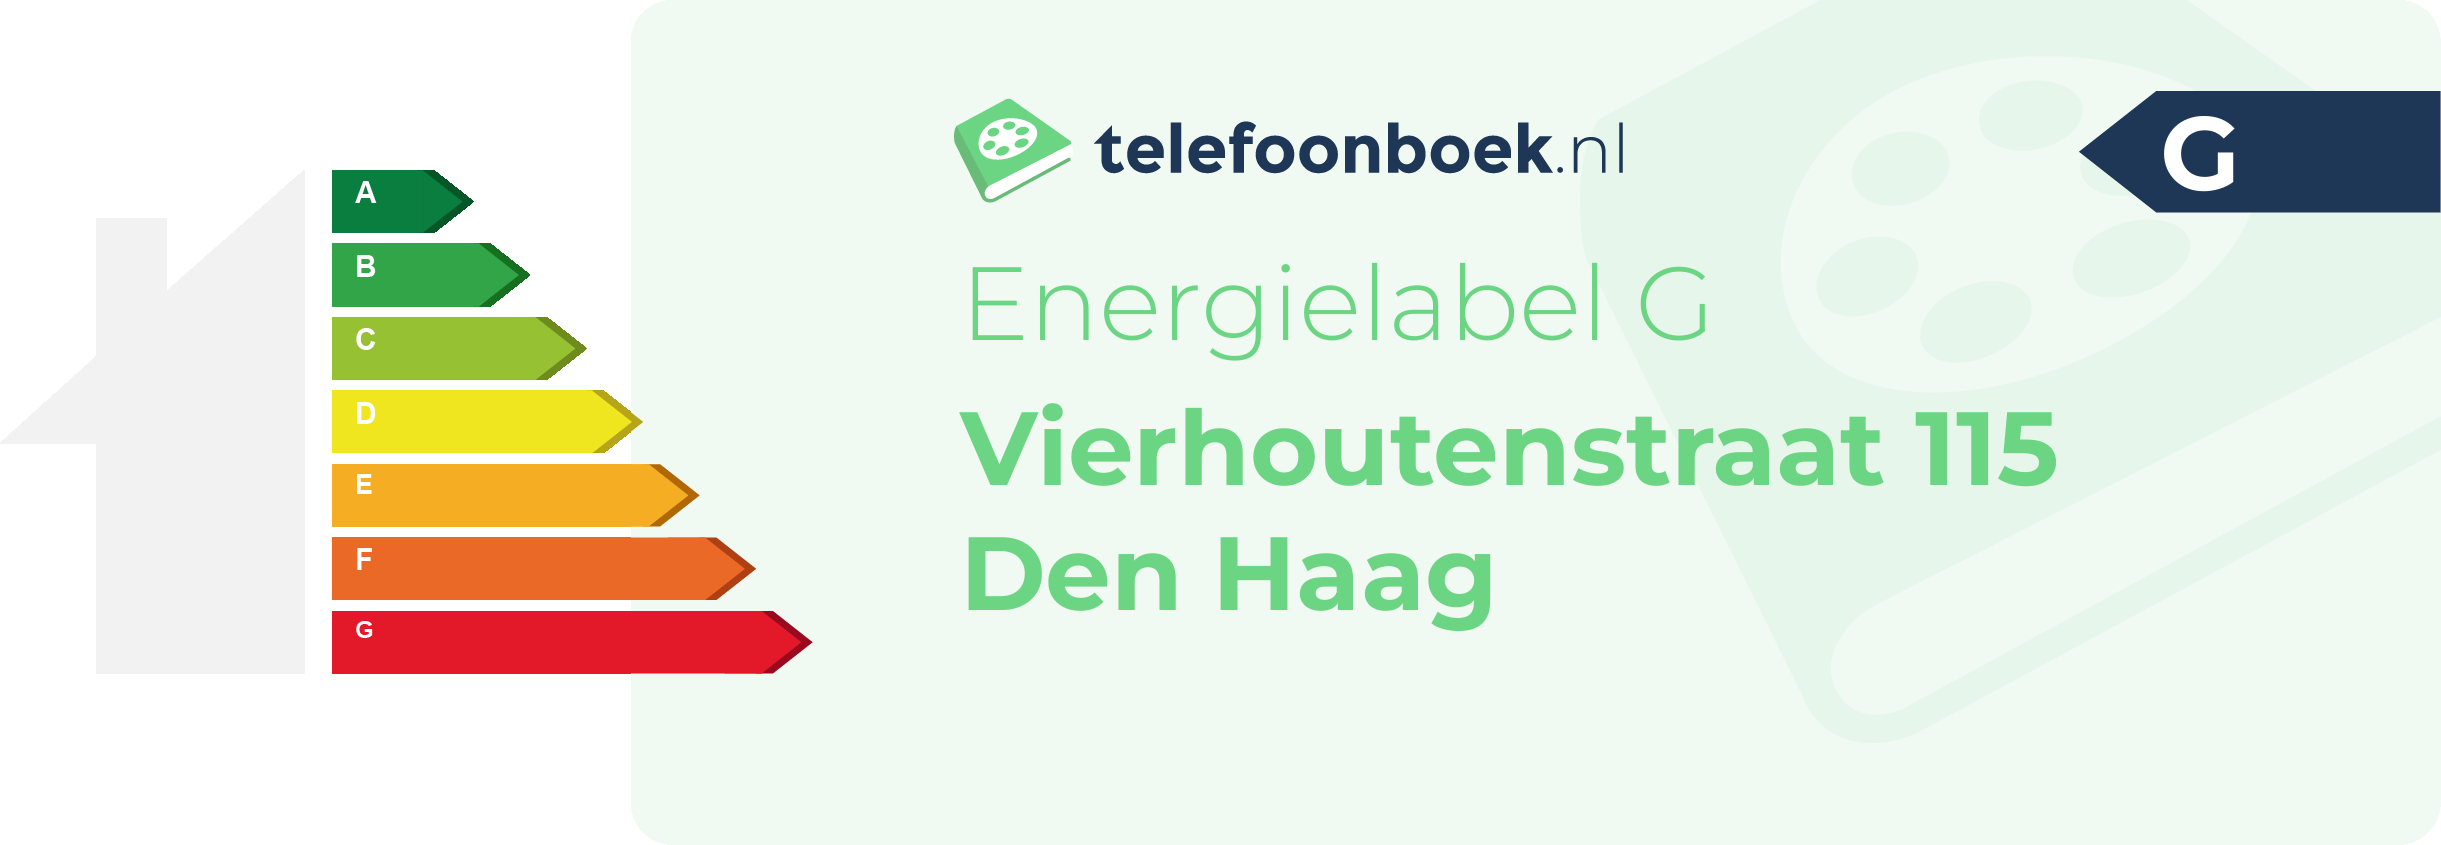 Energielabel Vierhoutenstraat 115 Den Haag